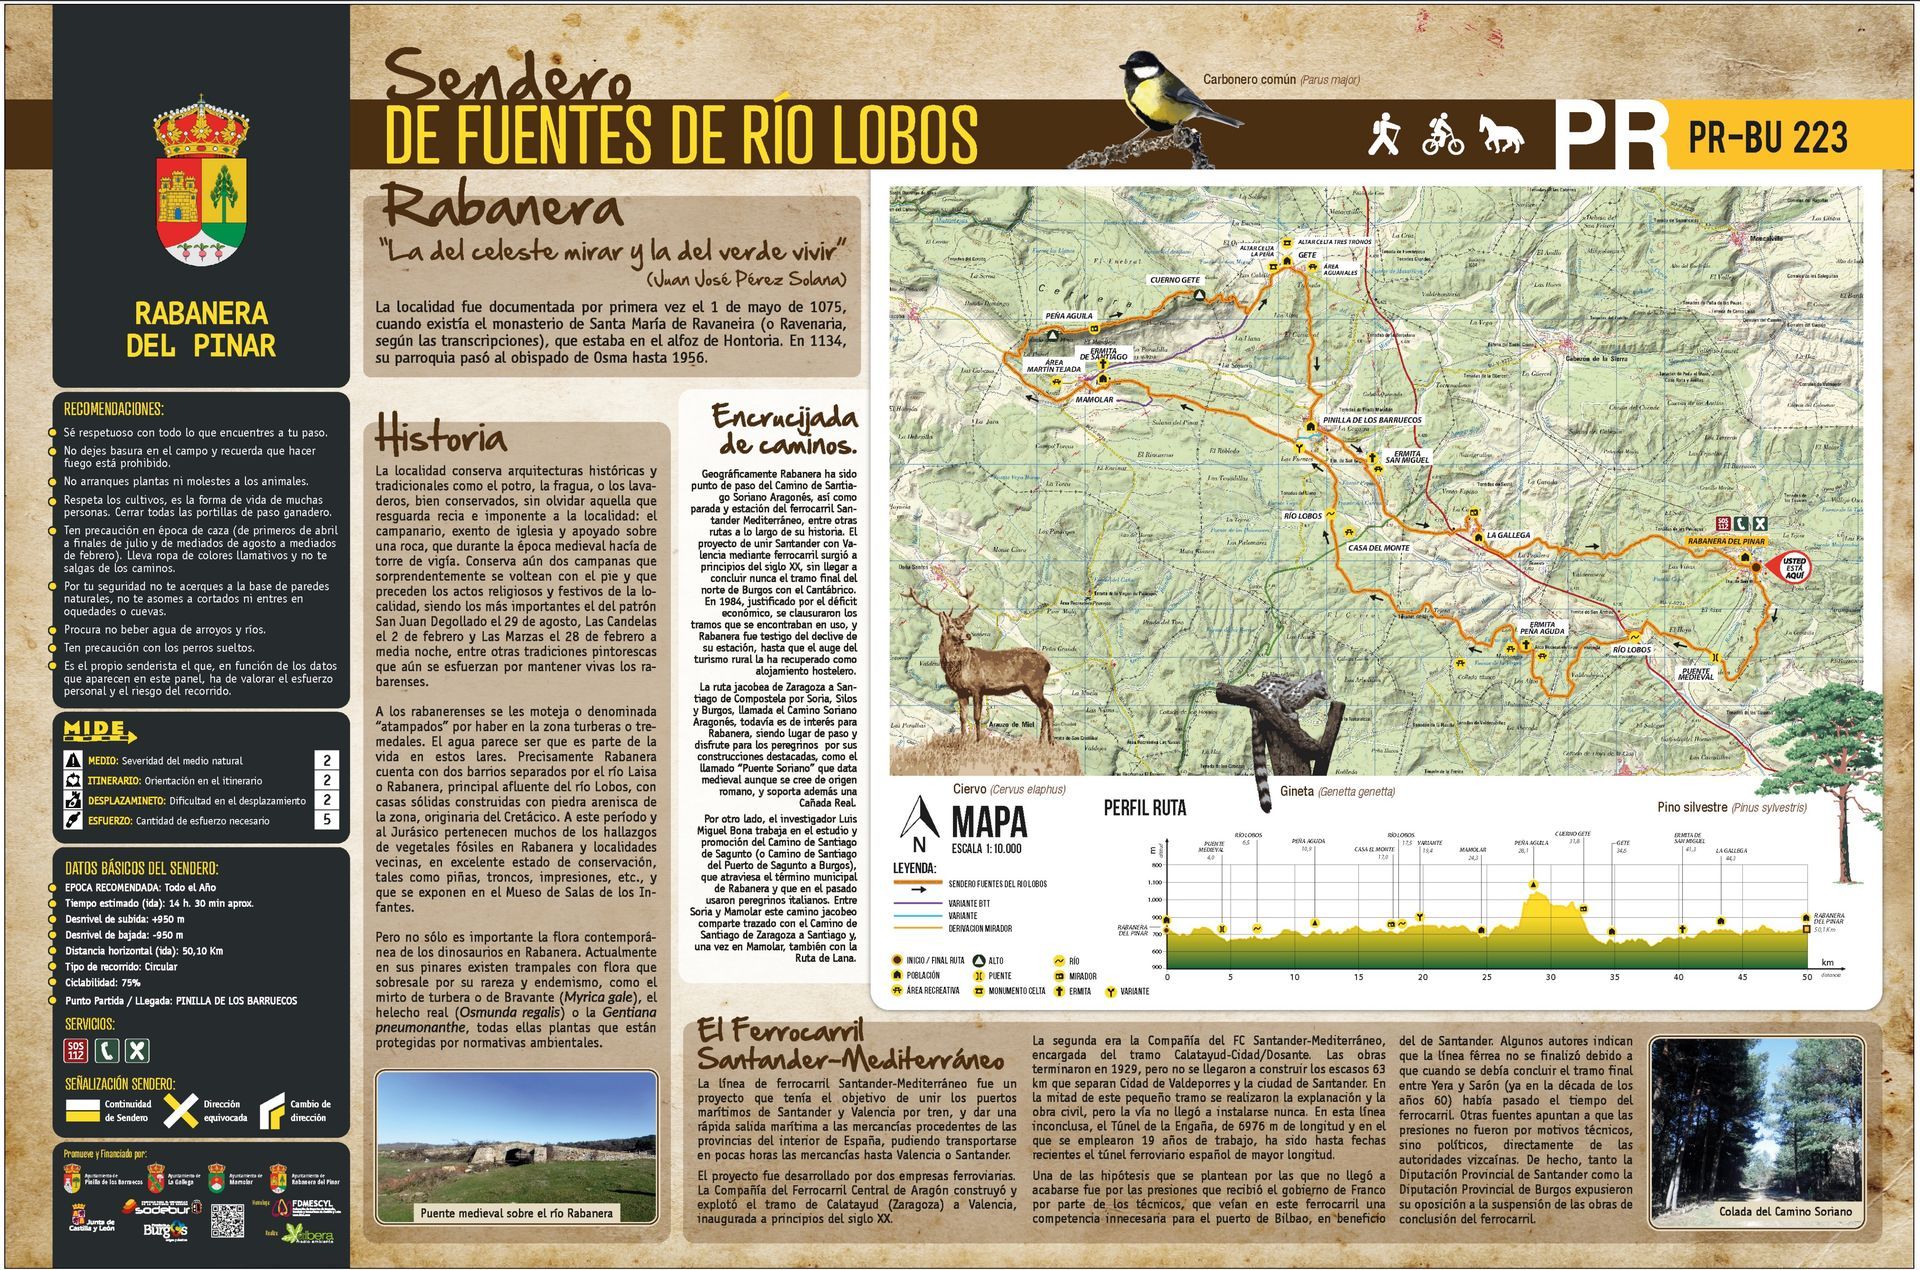 La Ruta de Senderismo Fuentes del Rio Lobos aparece en la prensa